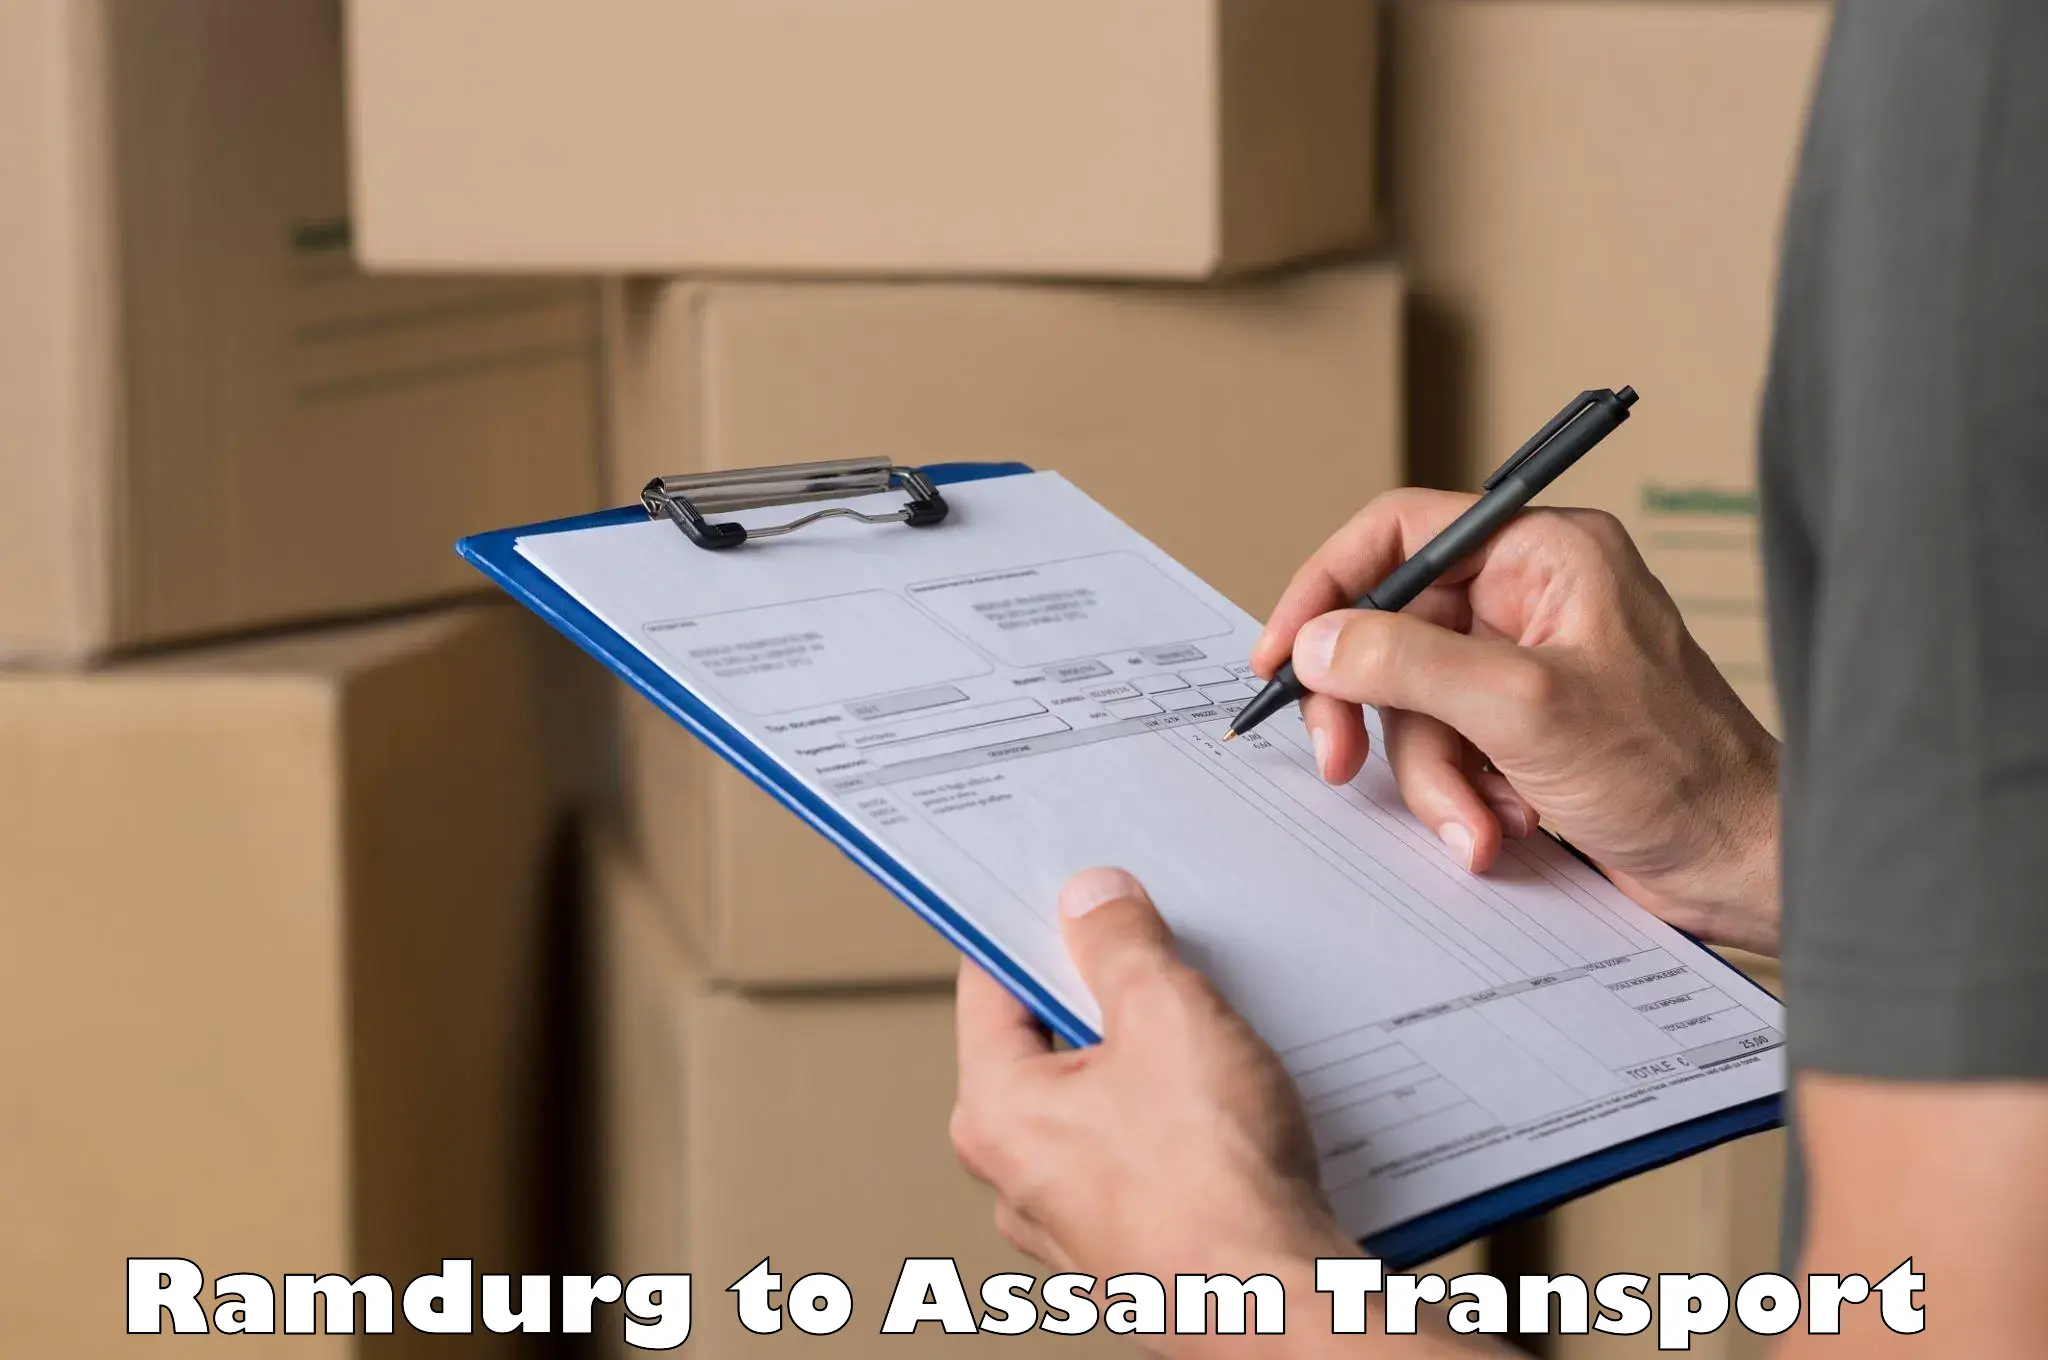 Online transport service Ramdurg to Assam